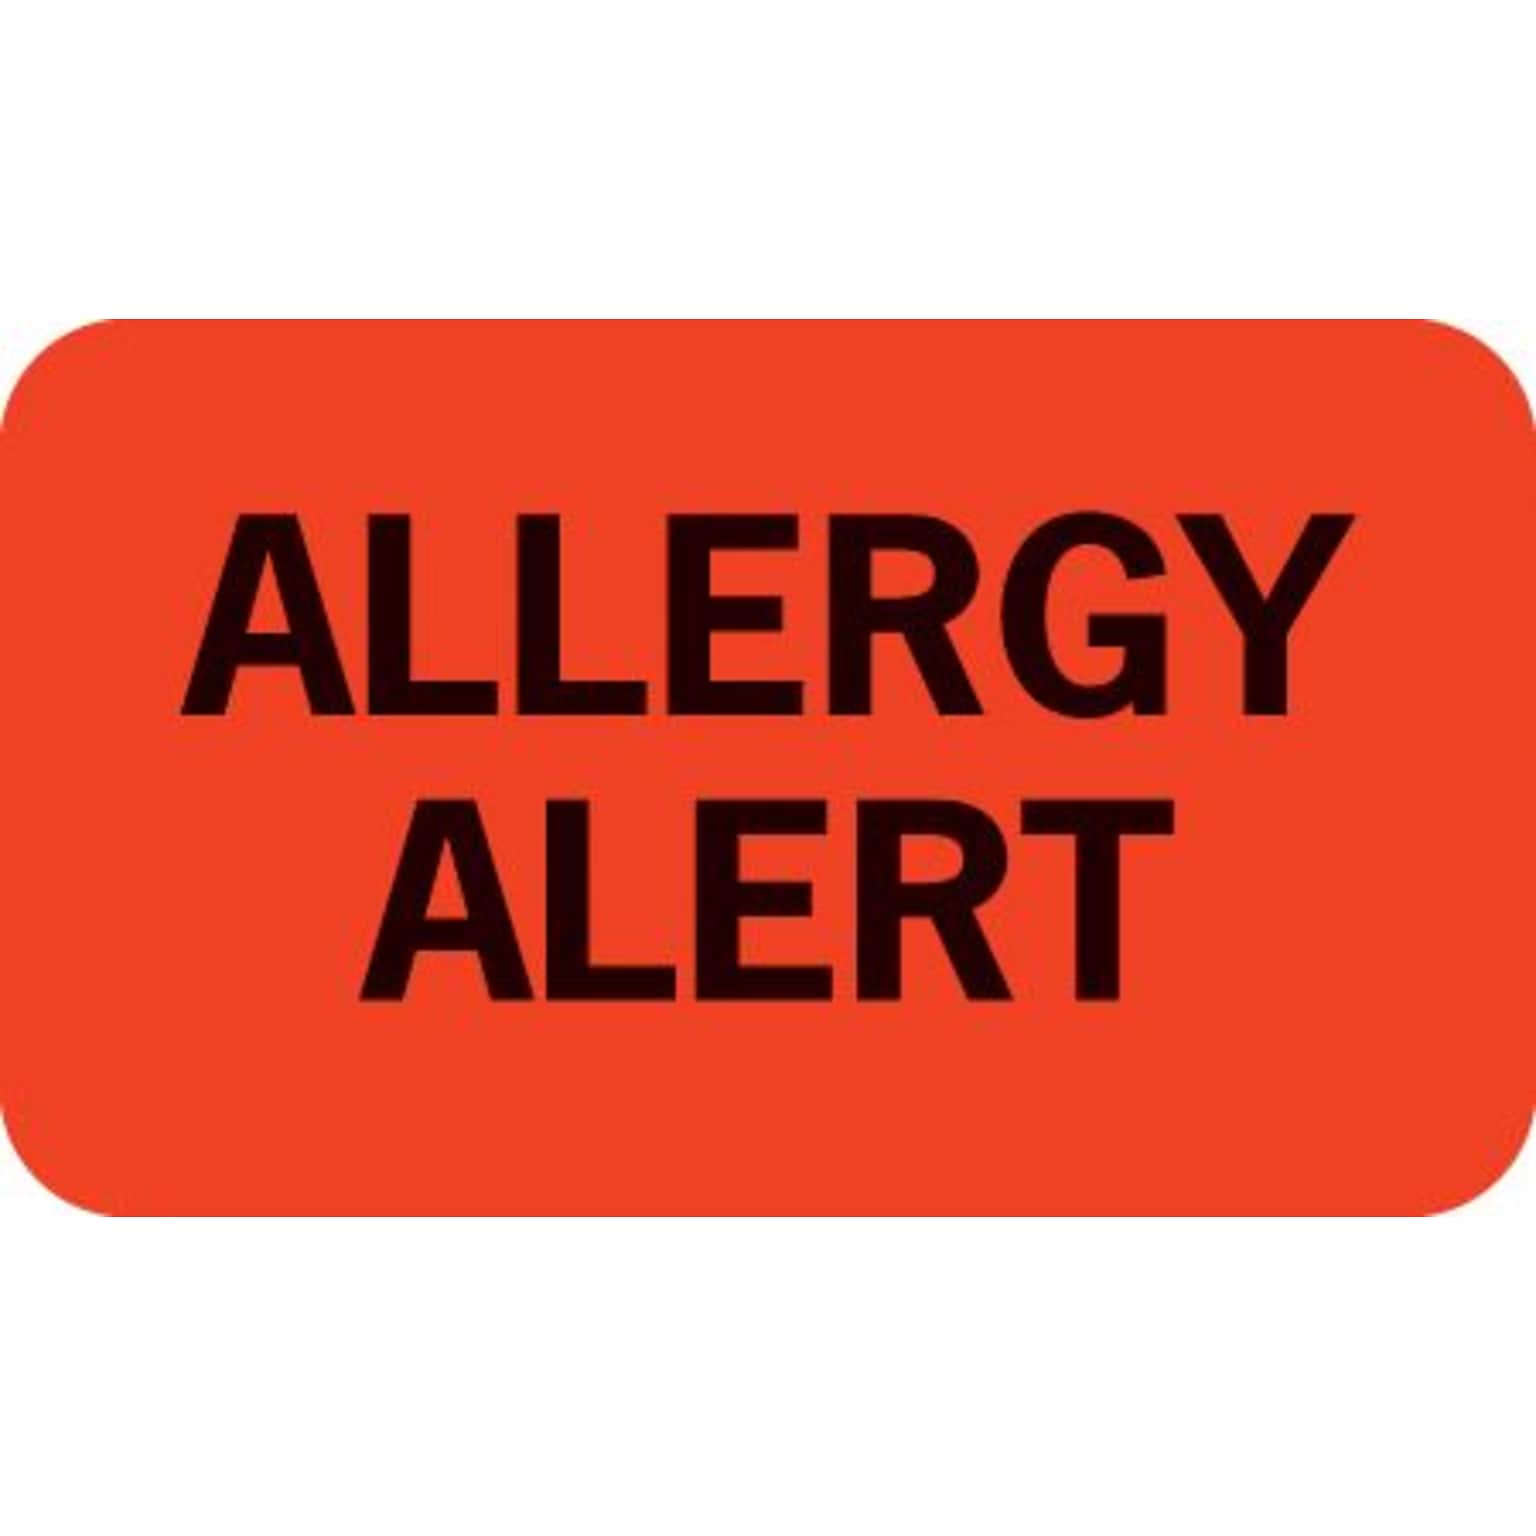 Medical Arts Press® Allergy Warning Medical Labels, Allergy Alert, Fluorescent Red, 7/8x1-1/2, 500 Labels